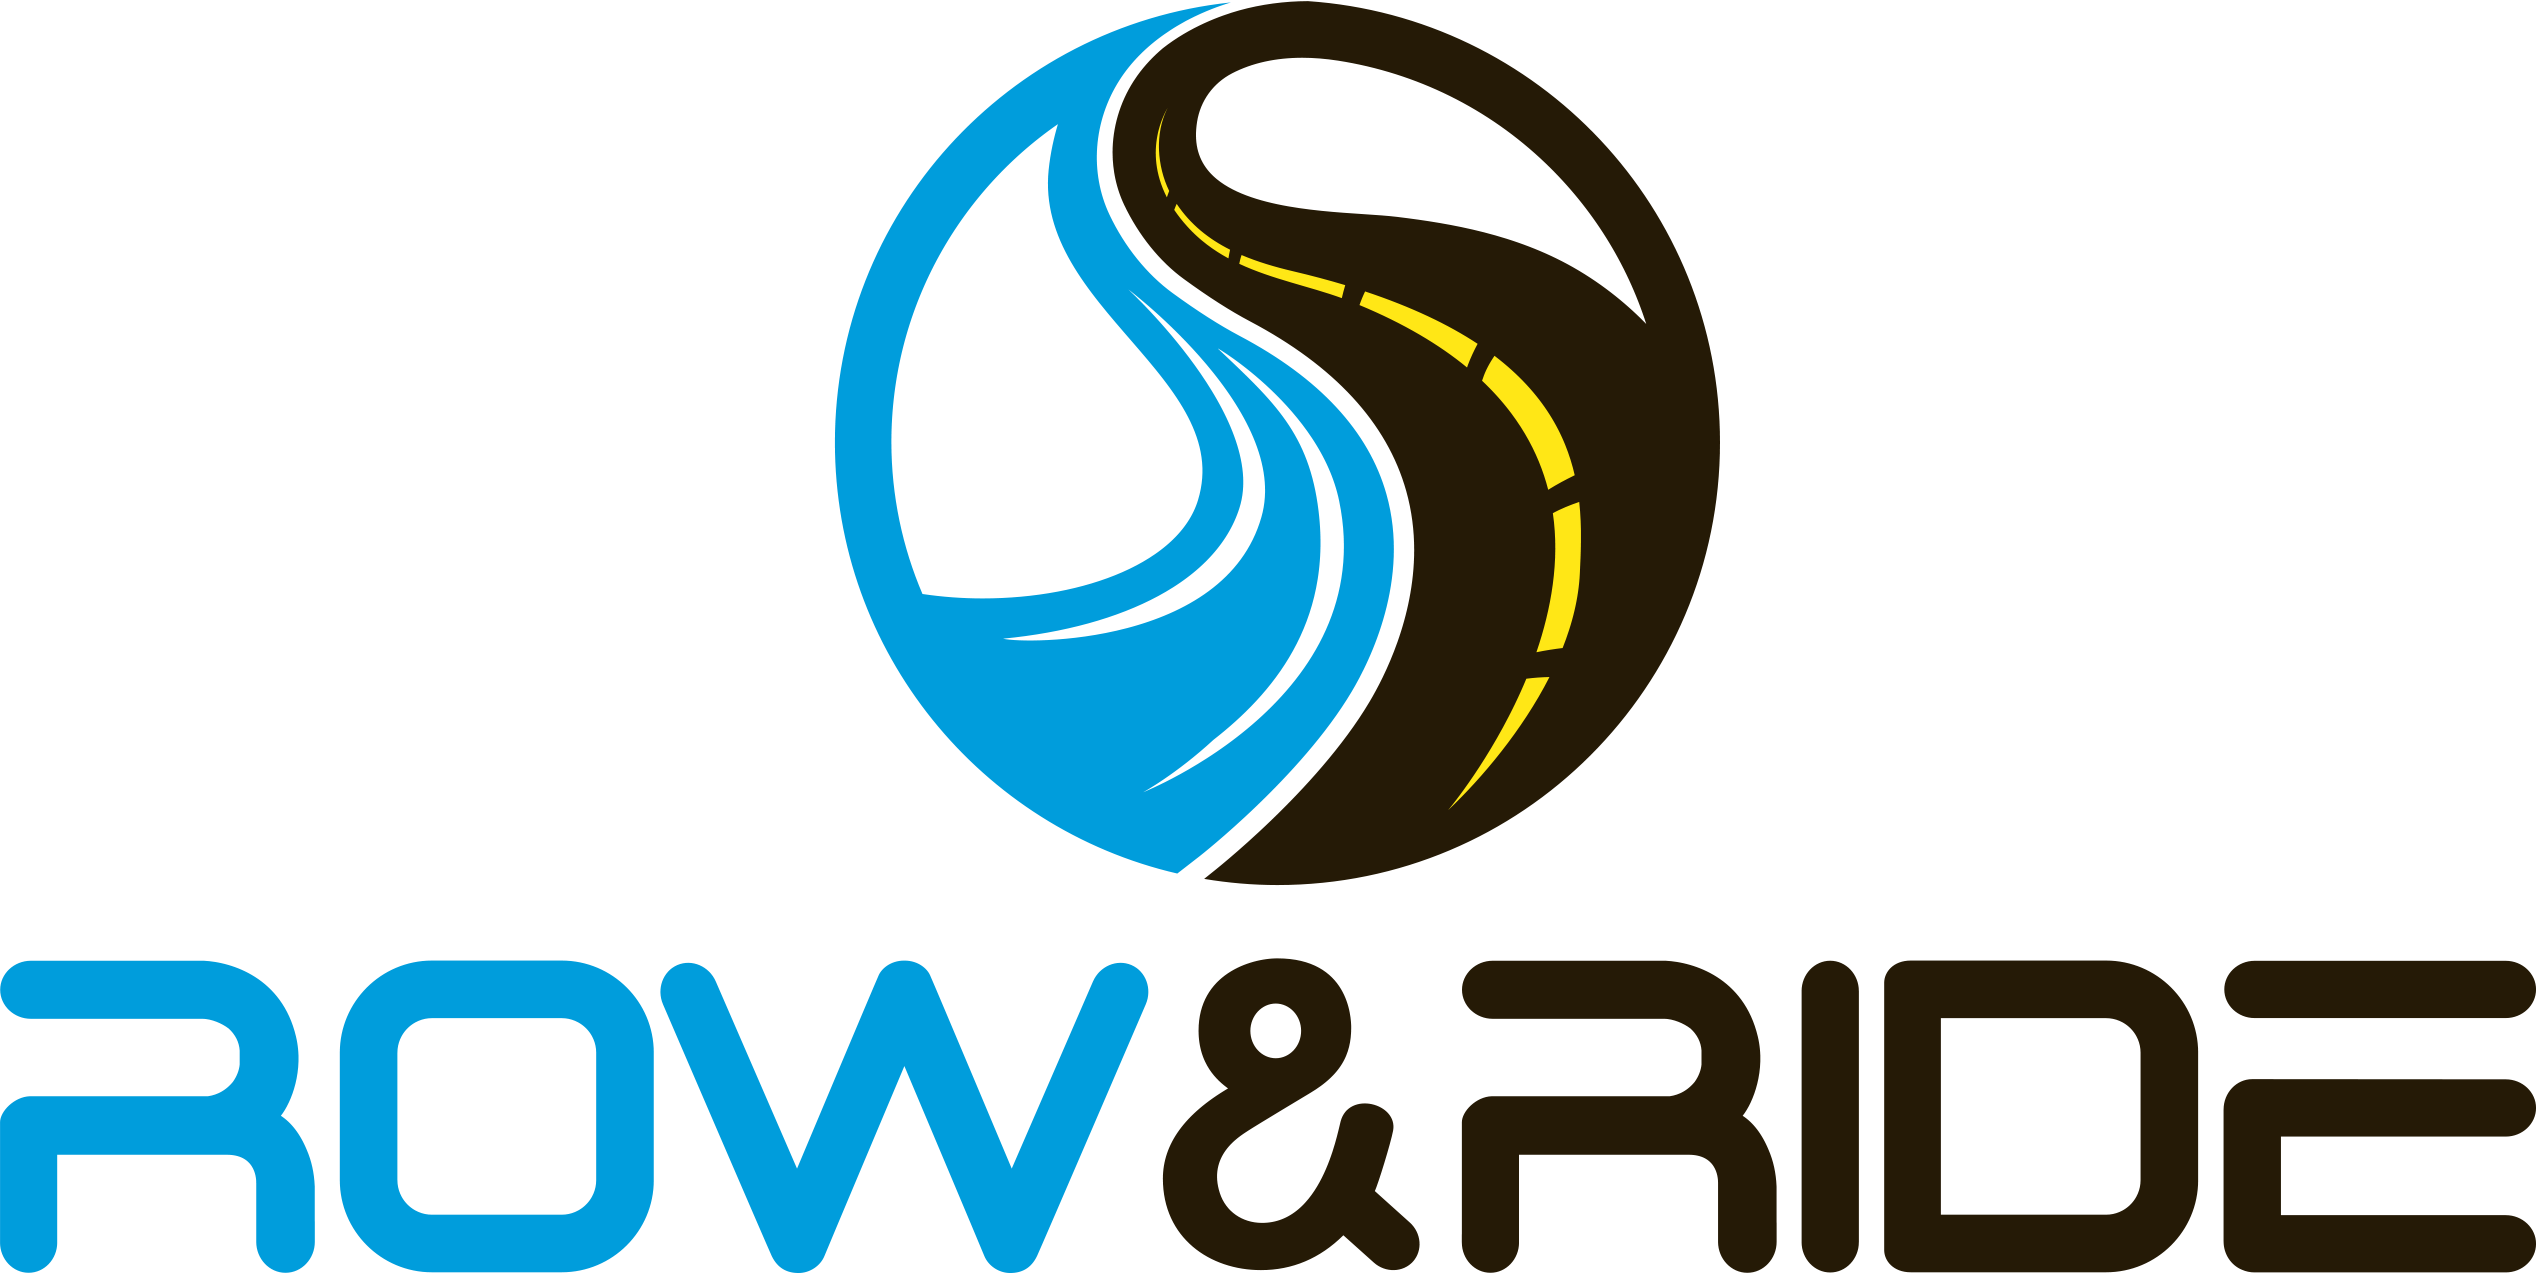 Row & Ride transparent logo